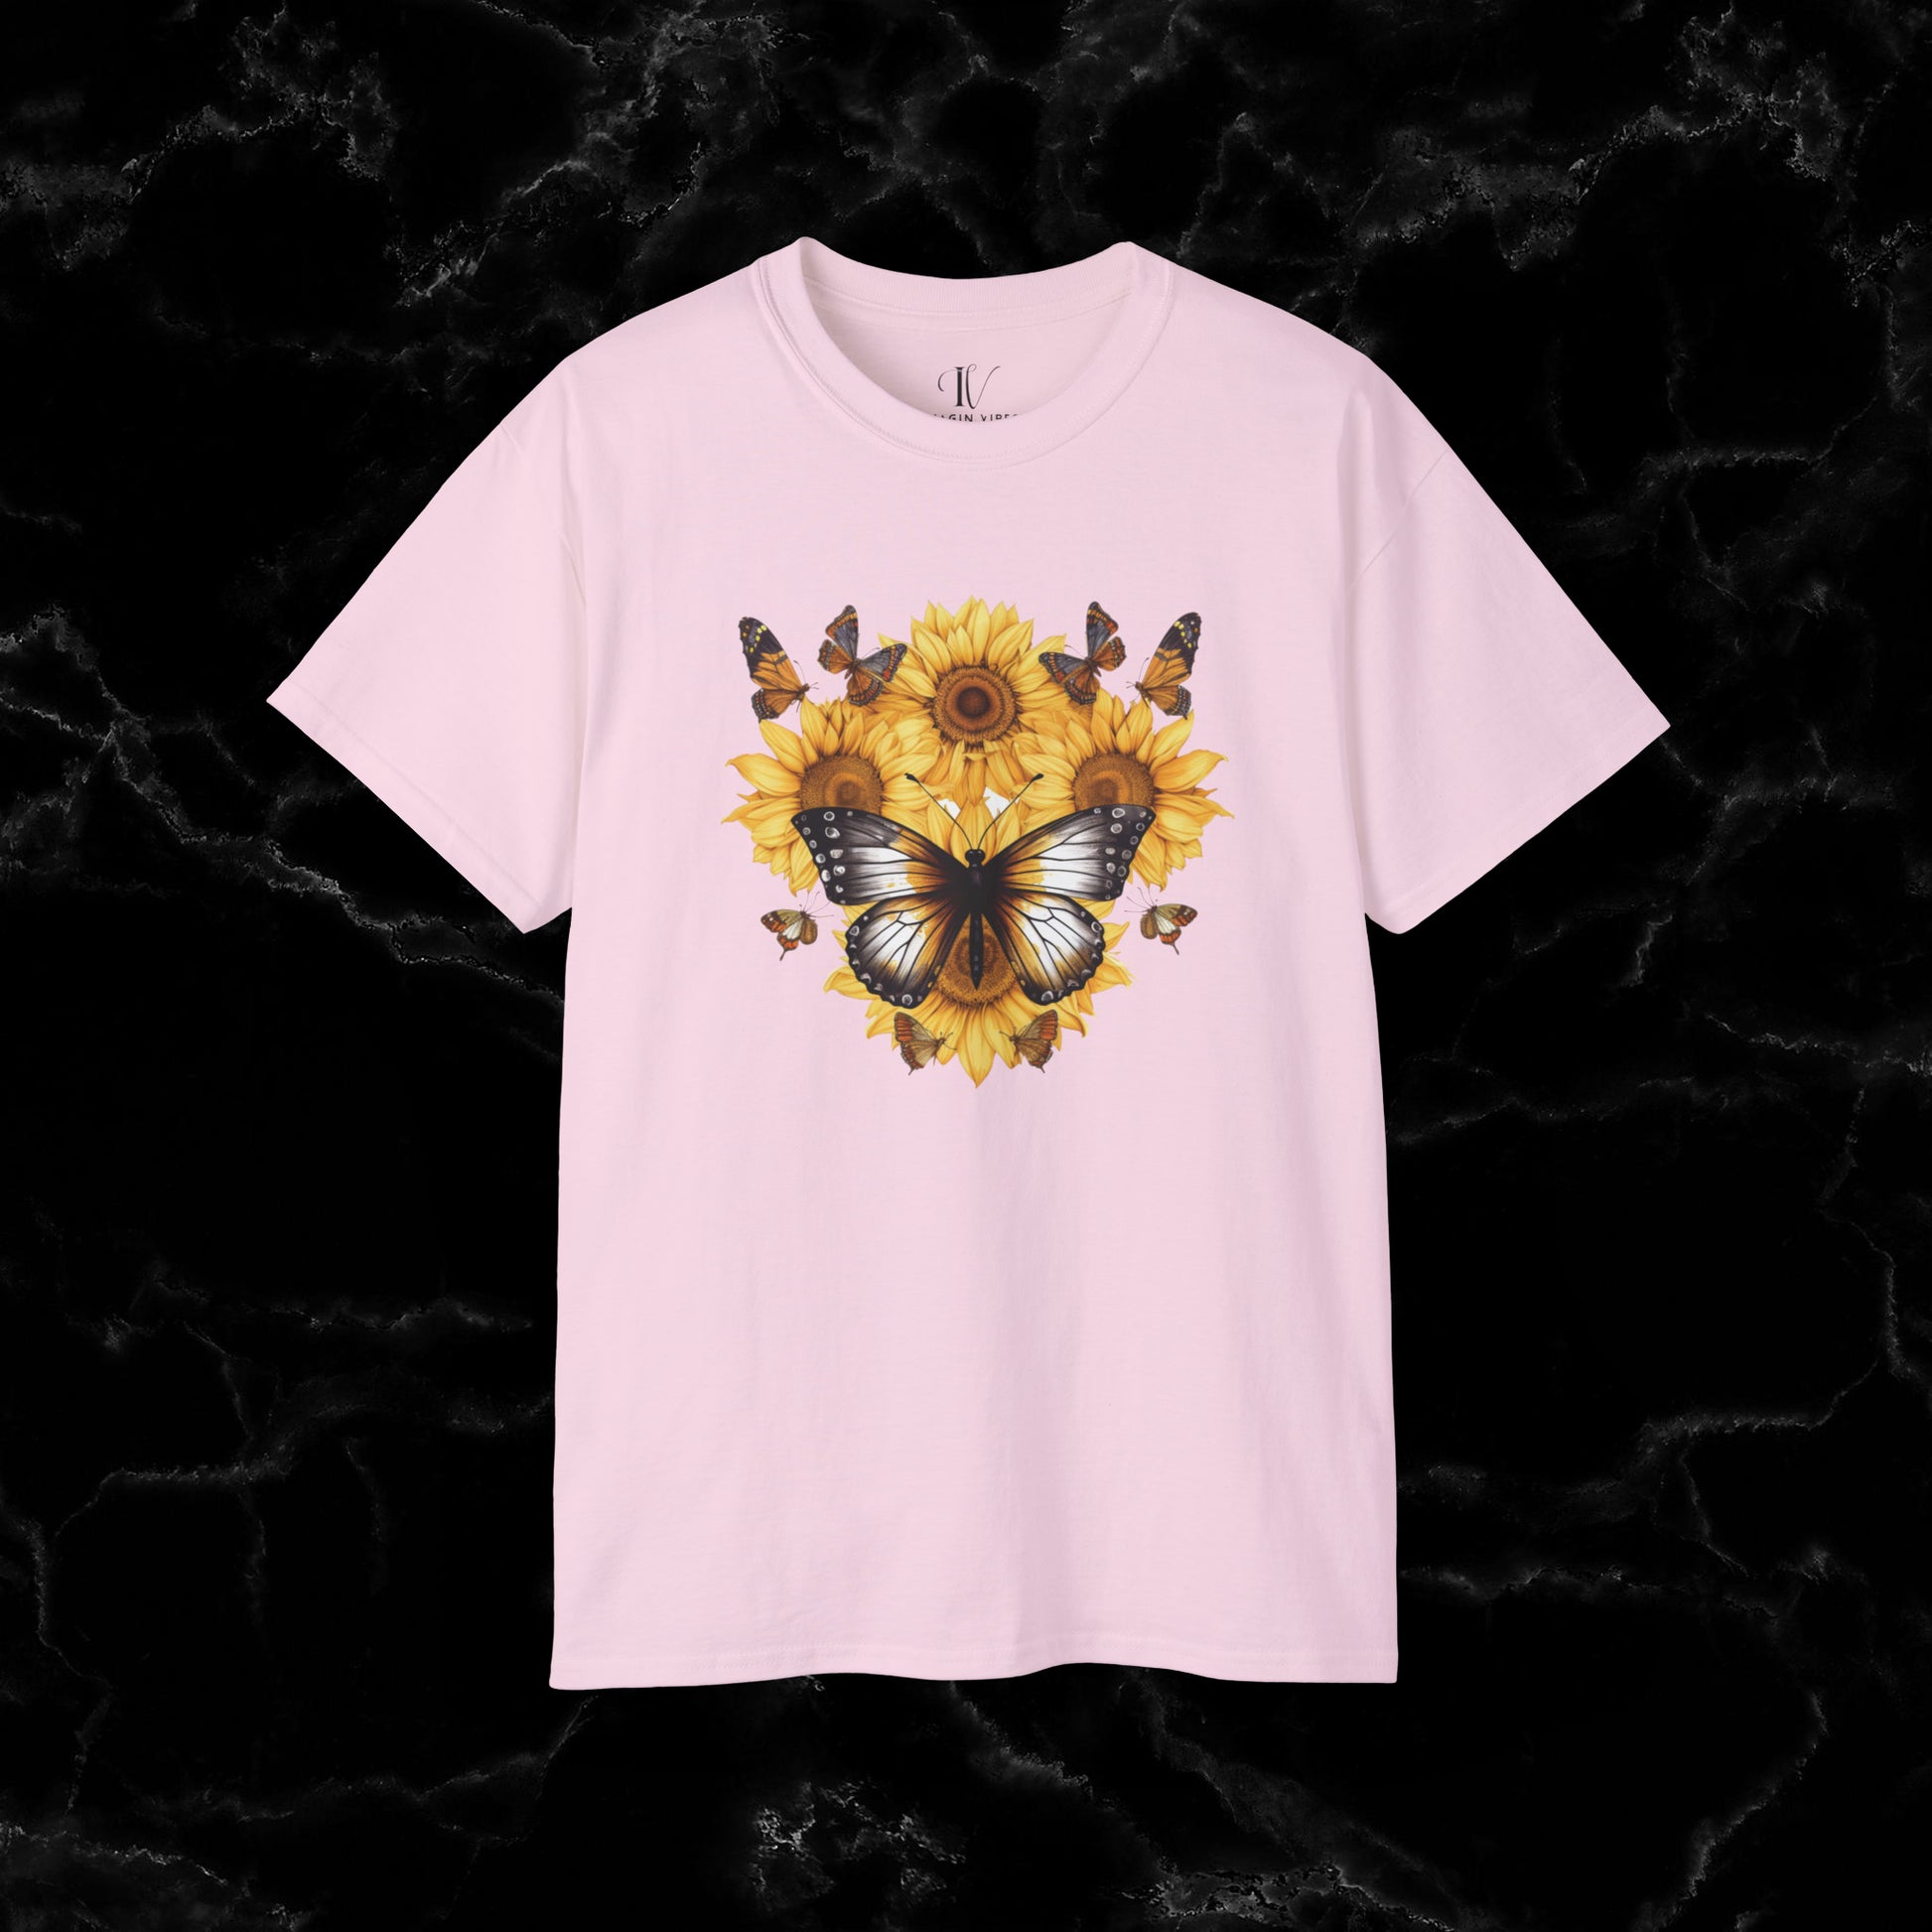 Sunflower Shirt - A Floral Tee, Garden Shirt, and Women's Fall Shirt with Nature-Inspired Design T-Shirt Light Pink S 